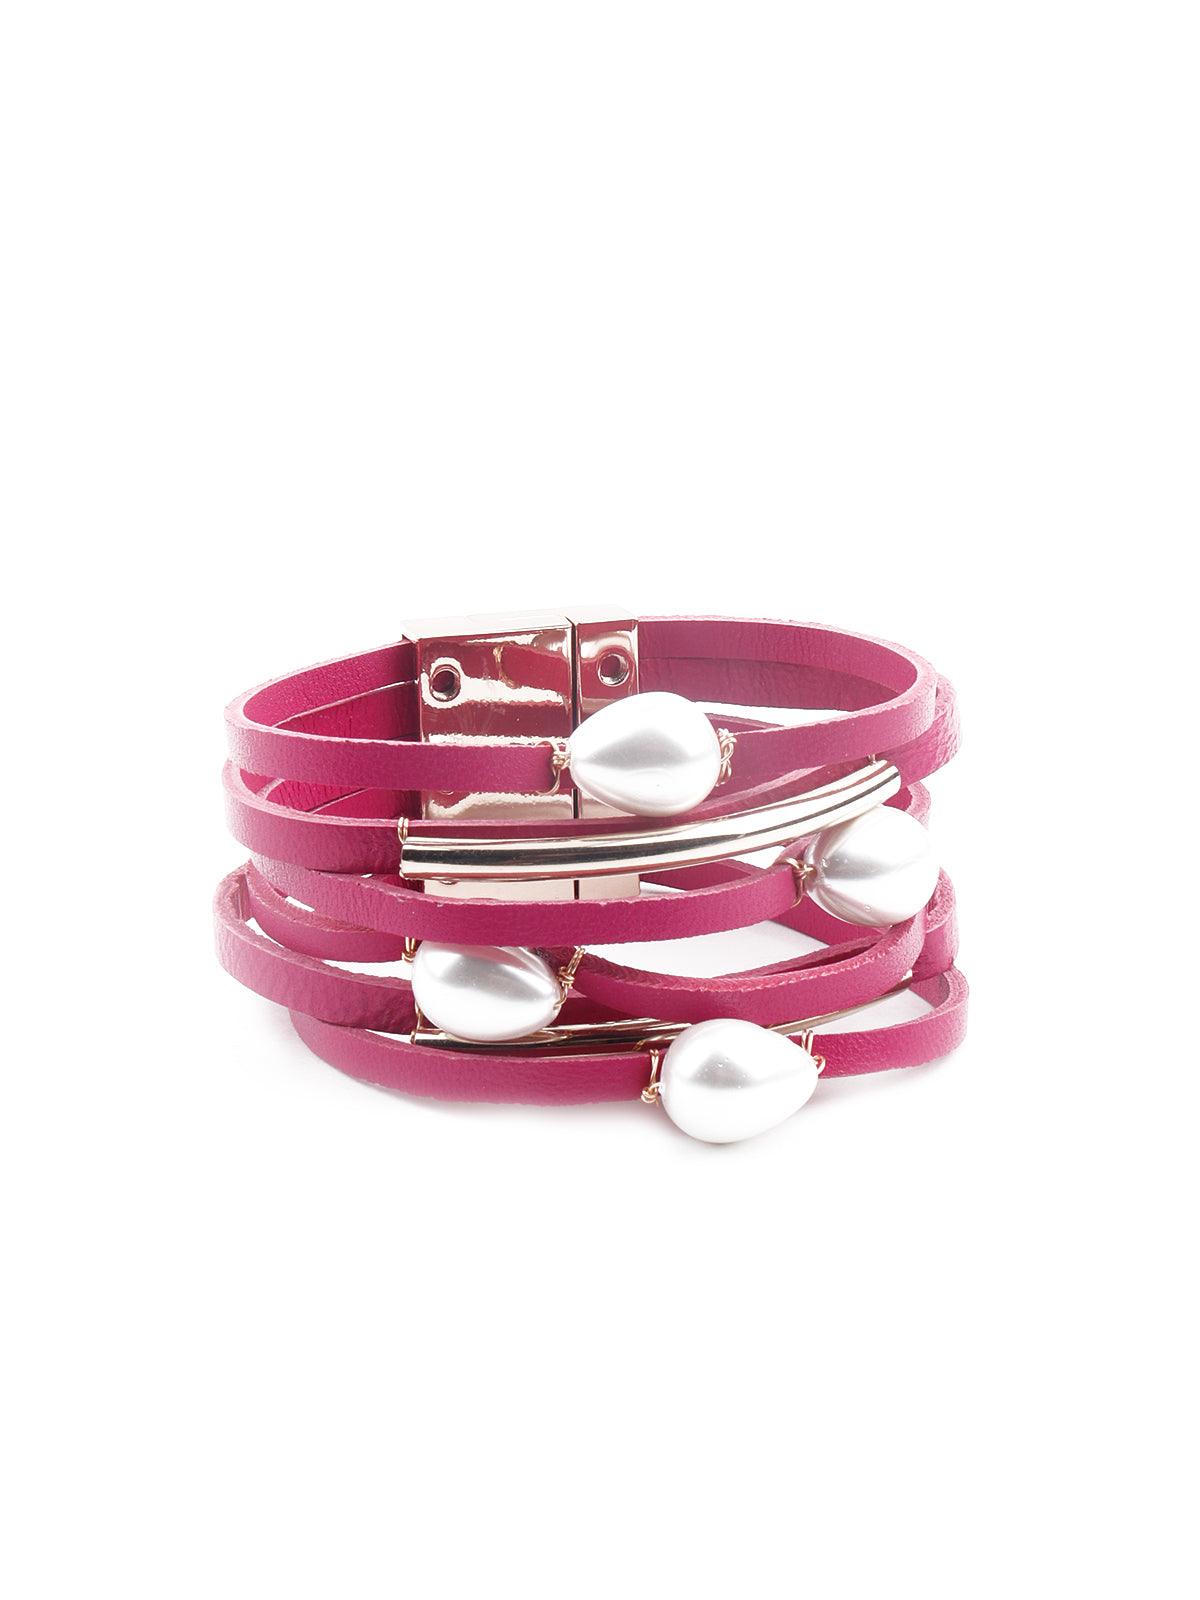 Exquisite pink layered embellished bracelet - Odette